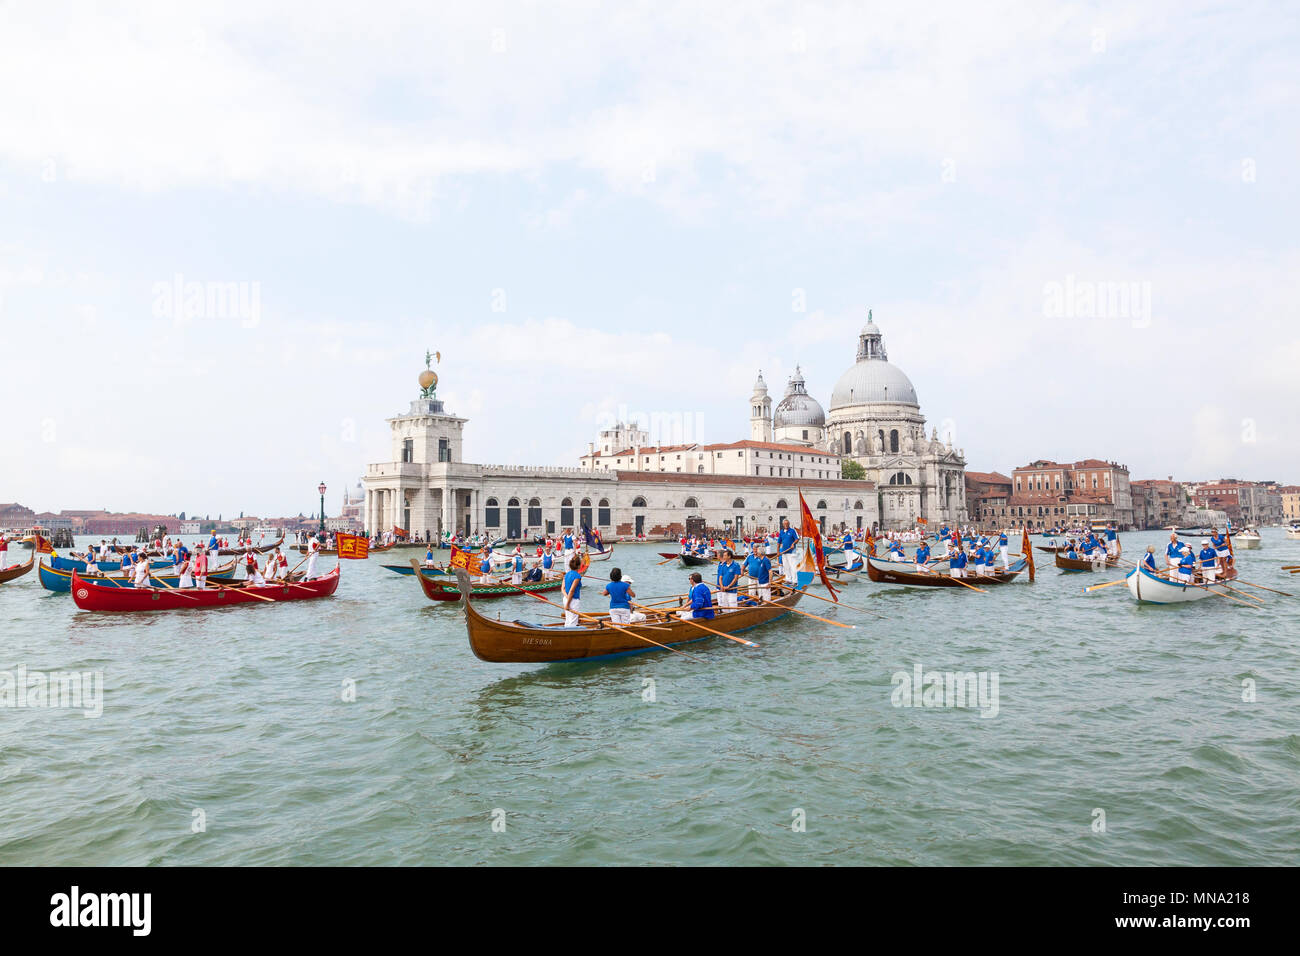 Boats gathering in front of Punta della Dogana for the Festa de la Sensa corteo, Venice, Italy to renew Venice's Marriage to the Sea ceremony Stock Photo